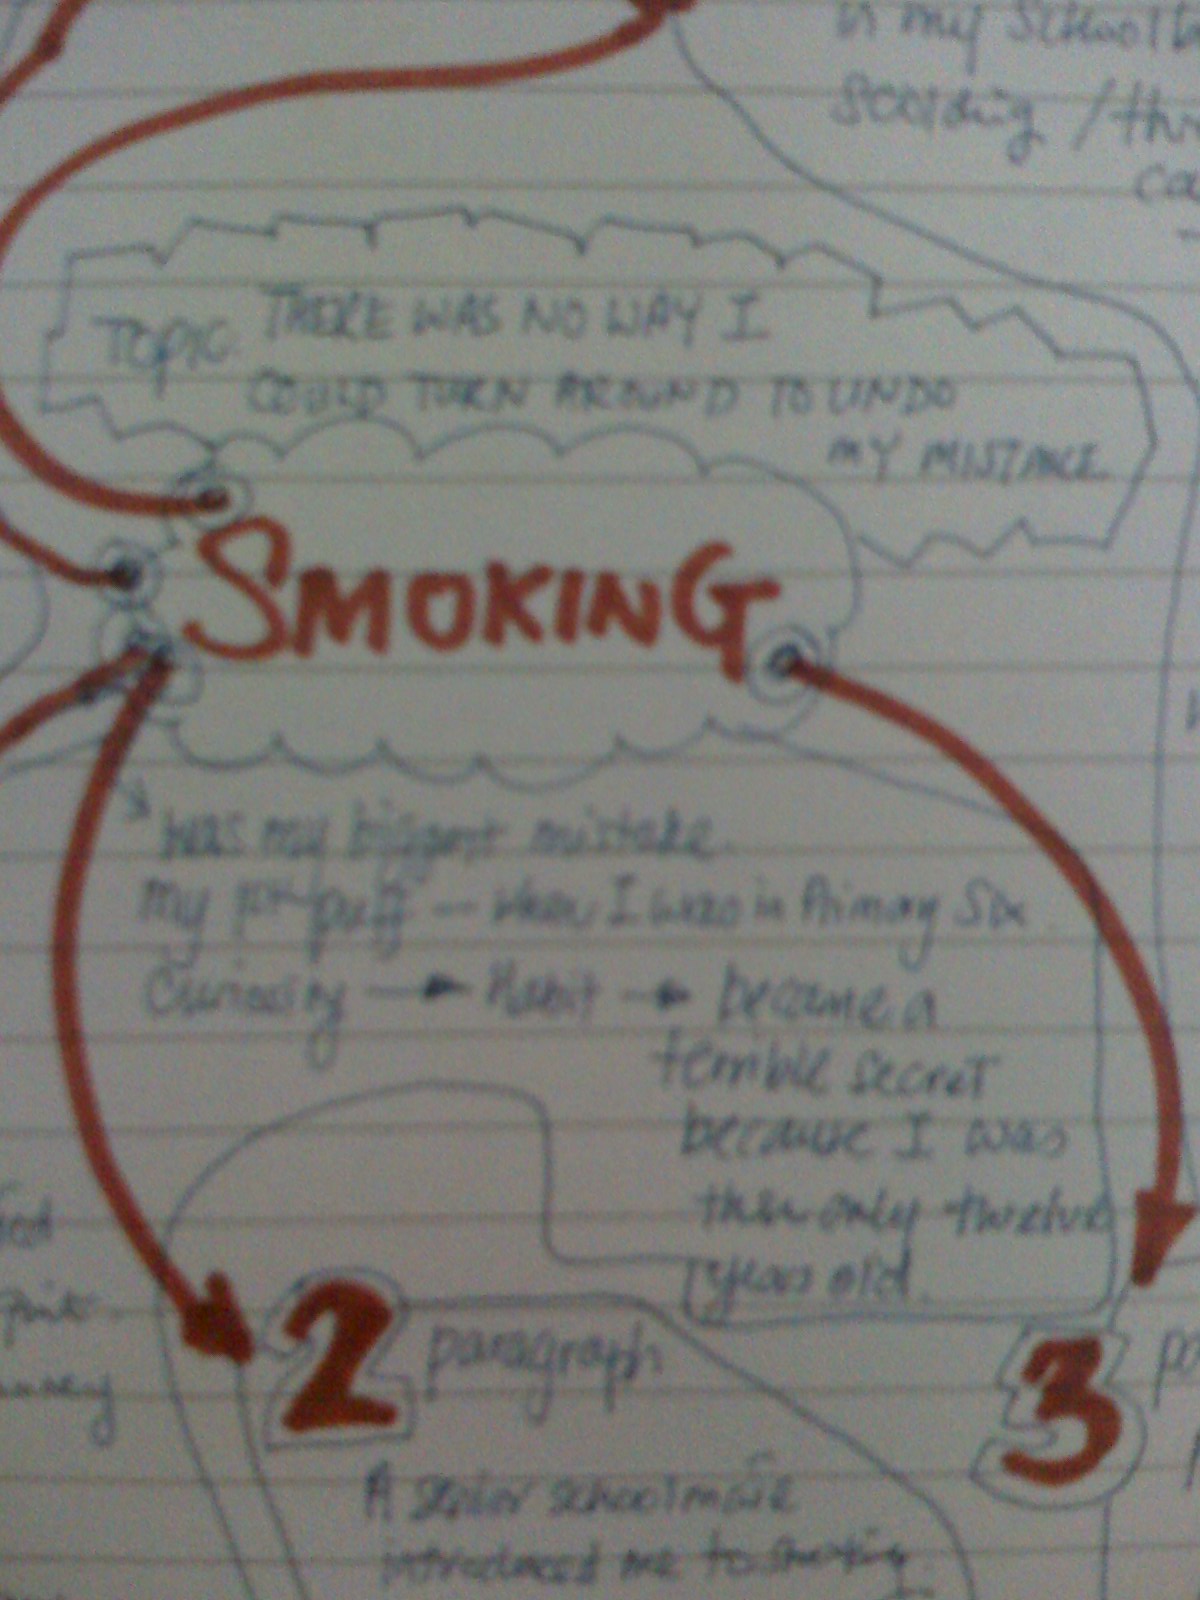 Smoking Essay